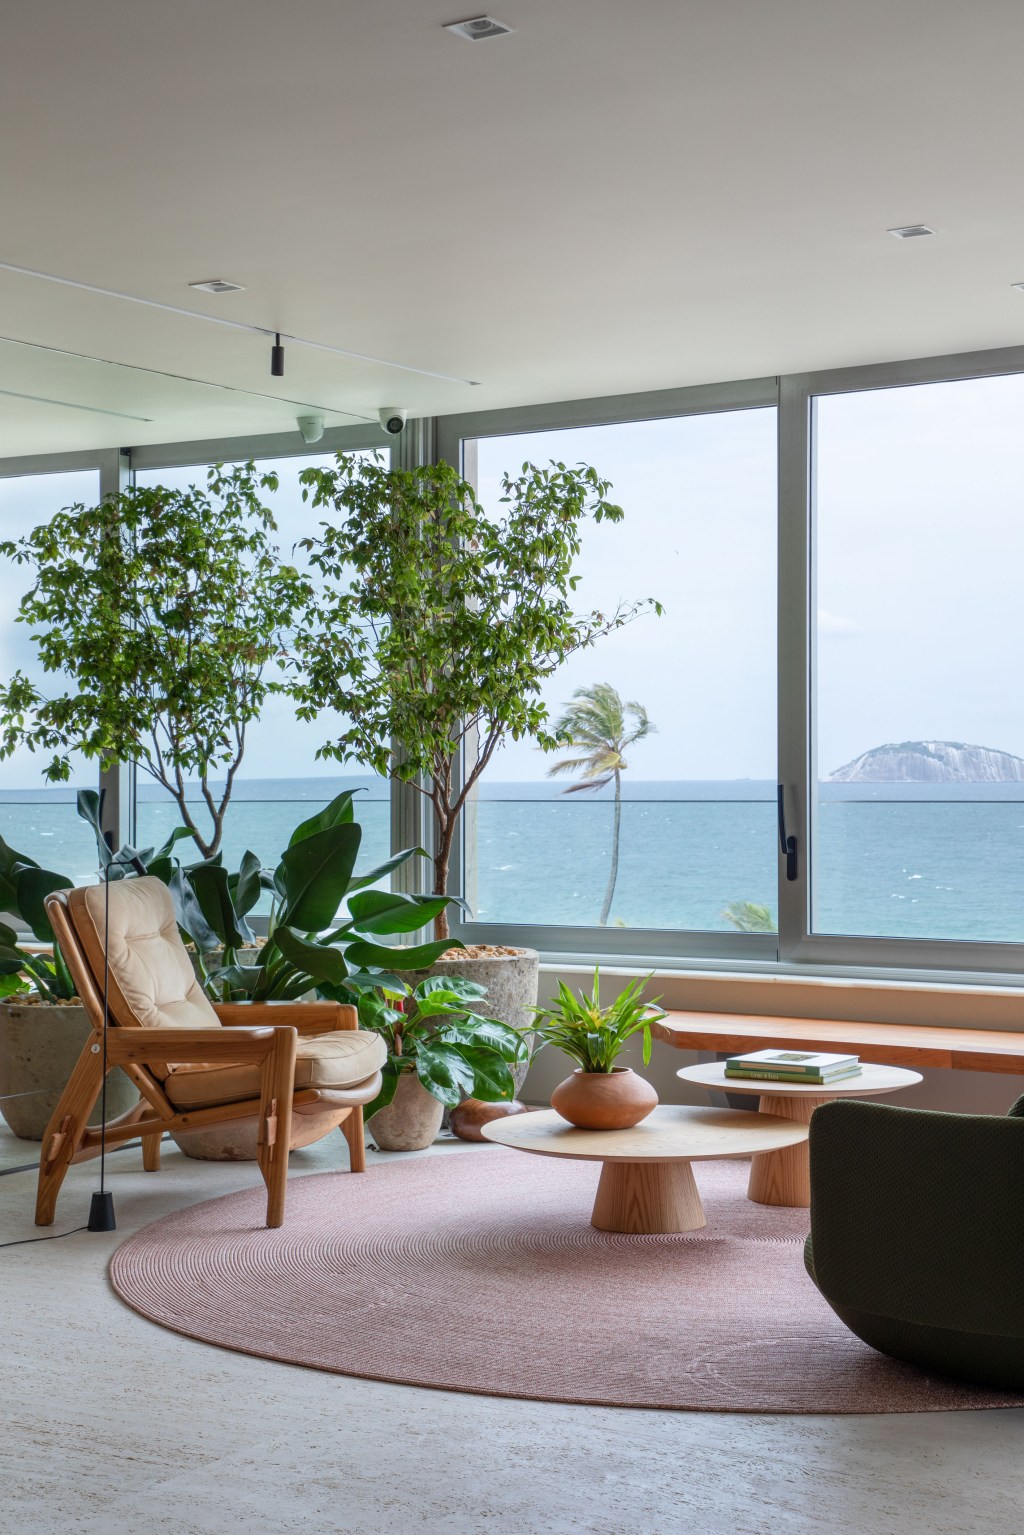 Apartamento com vista para praia ganha espaço de coworking na sala. Projeto de Up3 Arquitetura. Na foto, sala com vista para o mar.